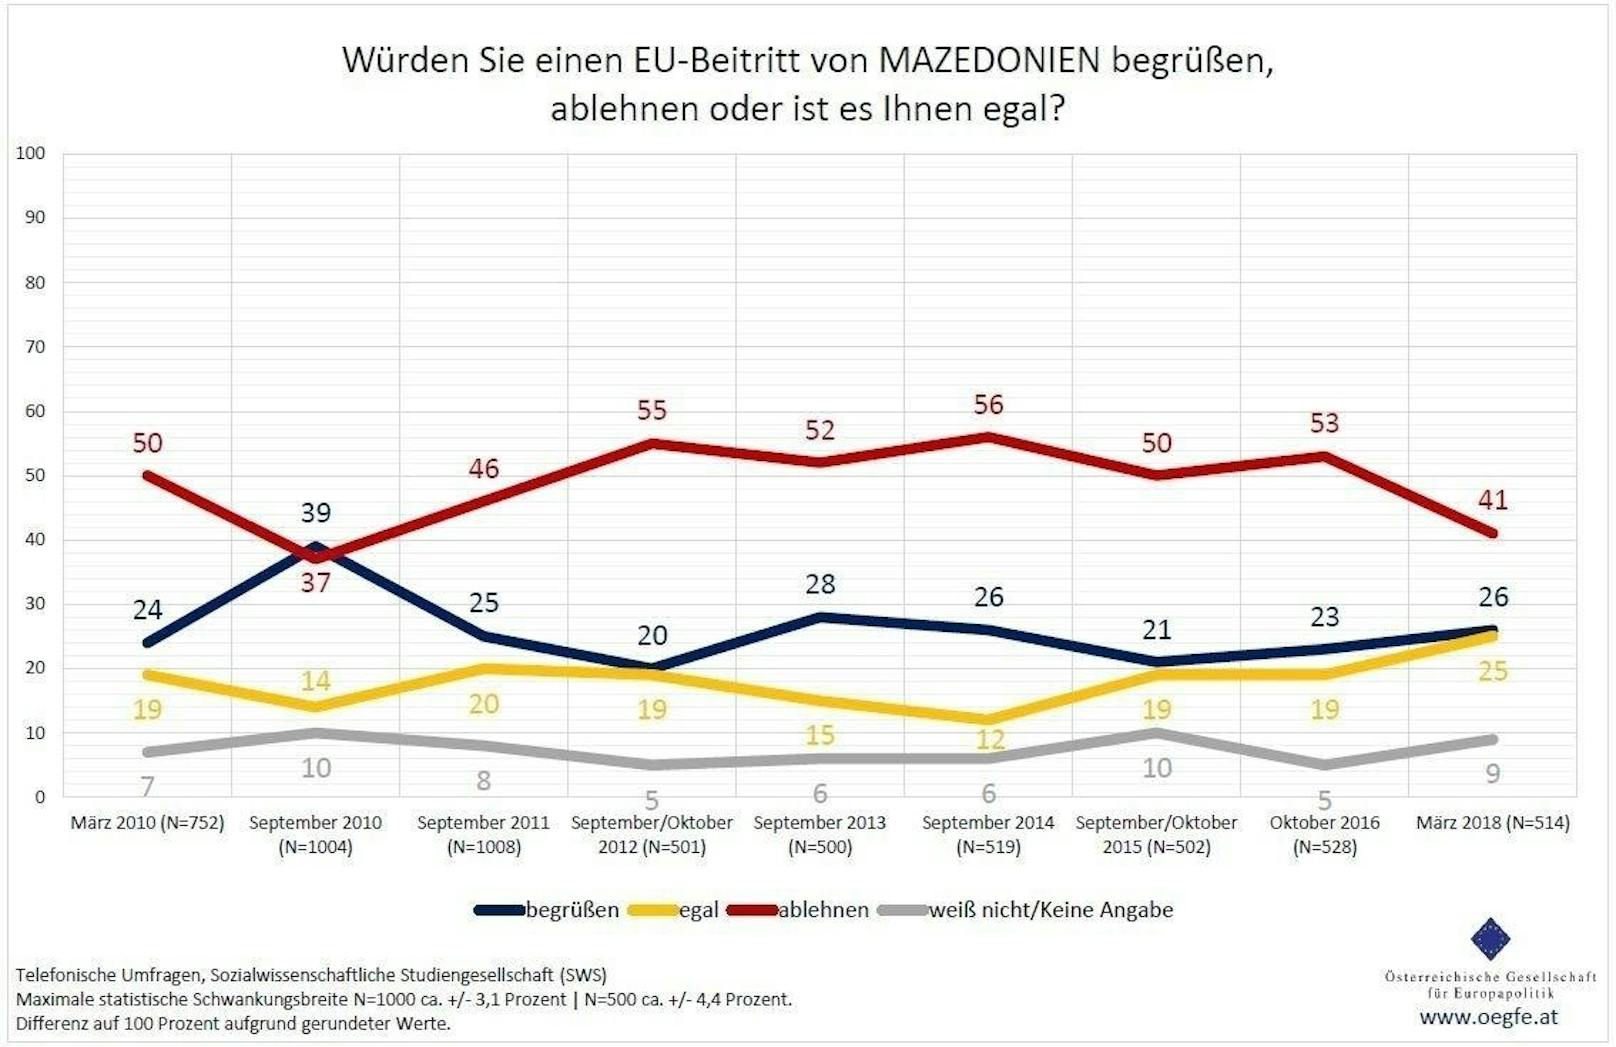 Ähnlich gestaltet sich das Meinungsbild, wenn es um einen möglichen Beitritt <b>Mazedoniens (FYROM)</b> geht: 26 Prozent würden ihn begrüßen, 41 Prozent ablehnen, 25 Prozent ist es "egal".